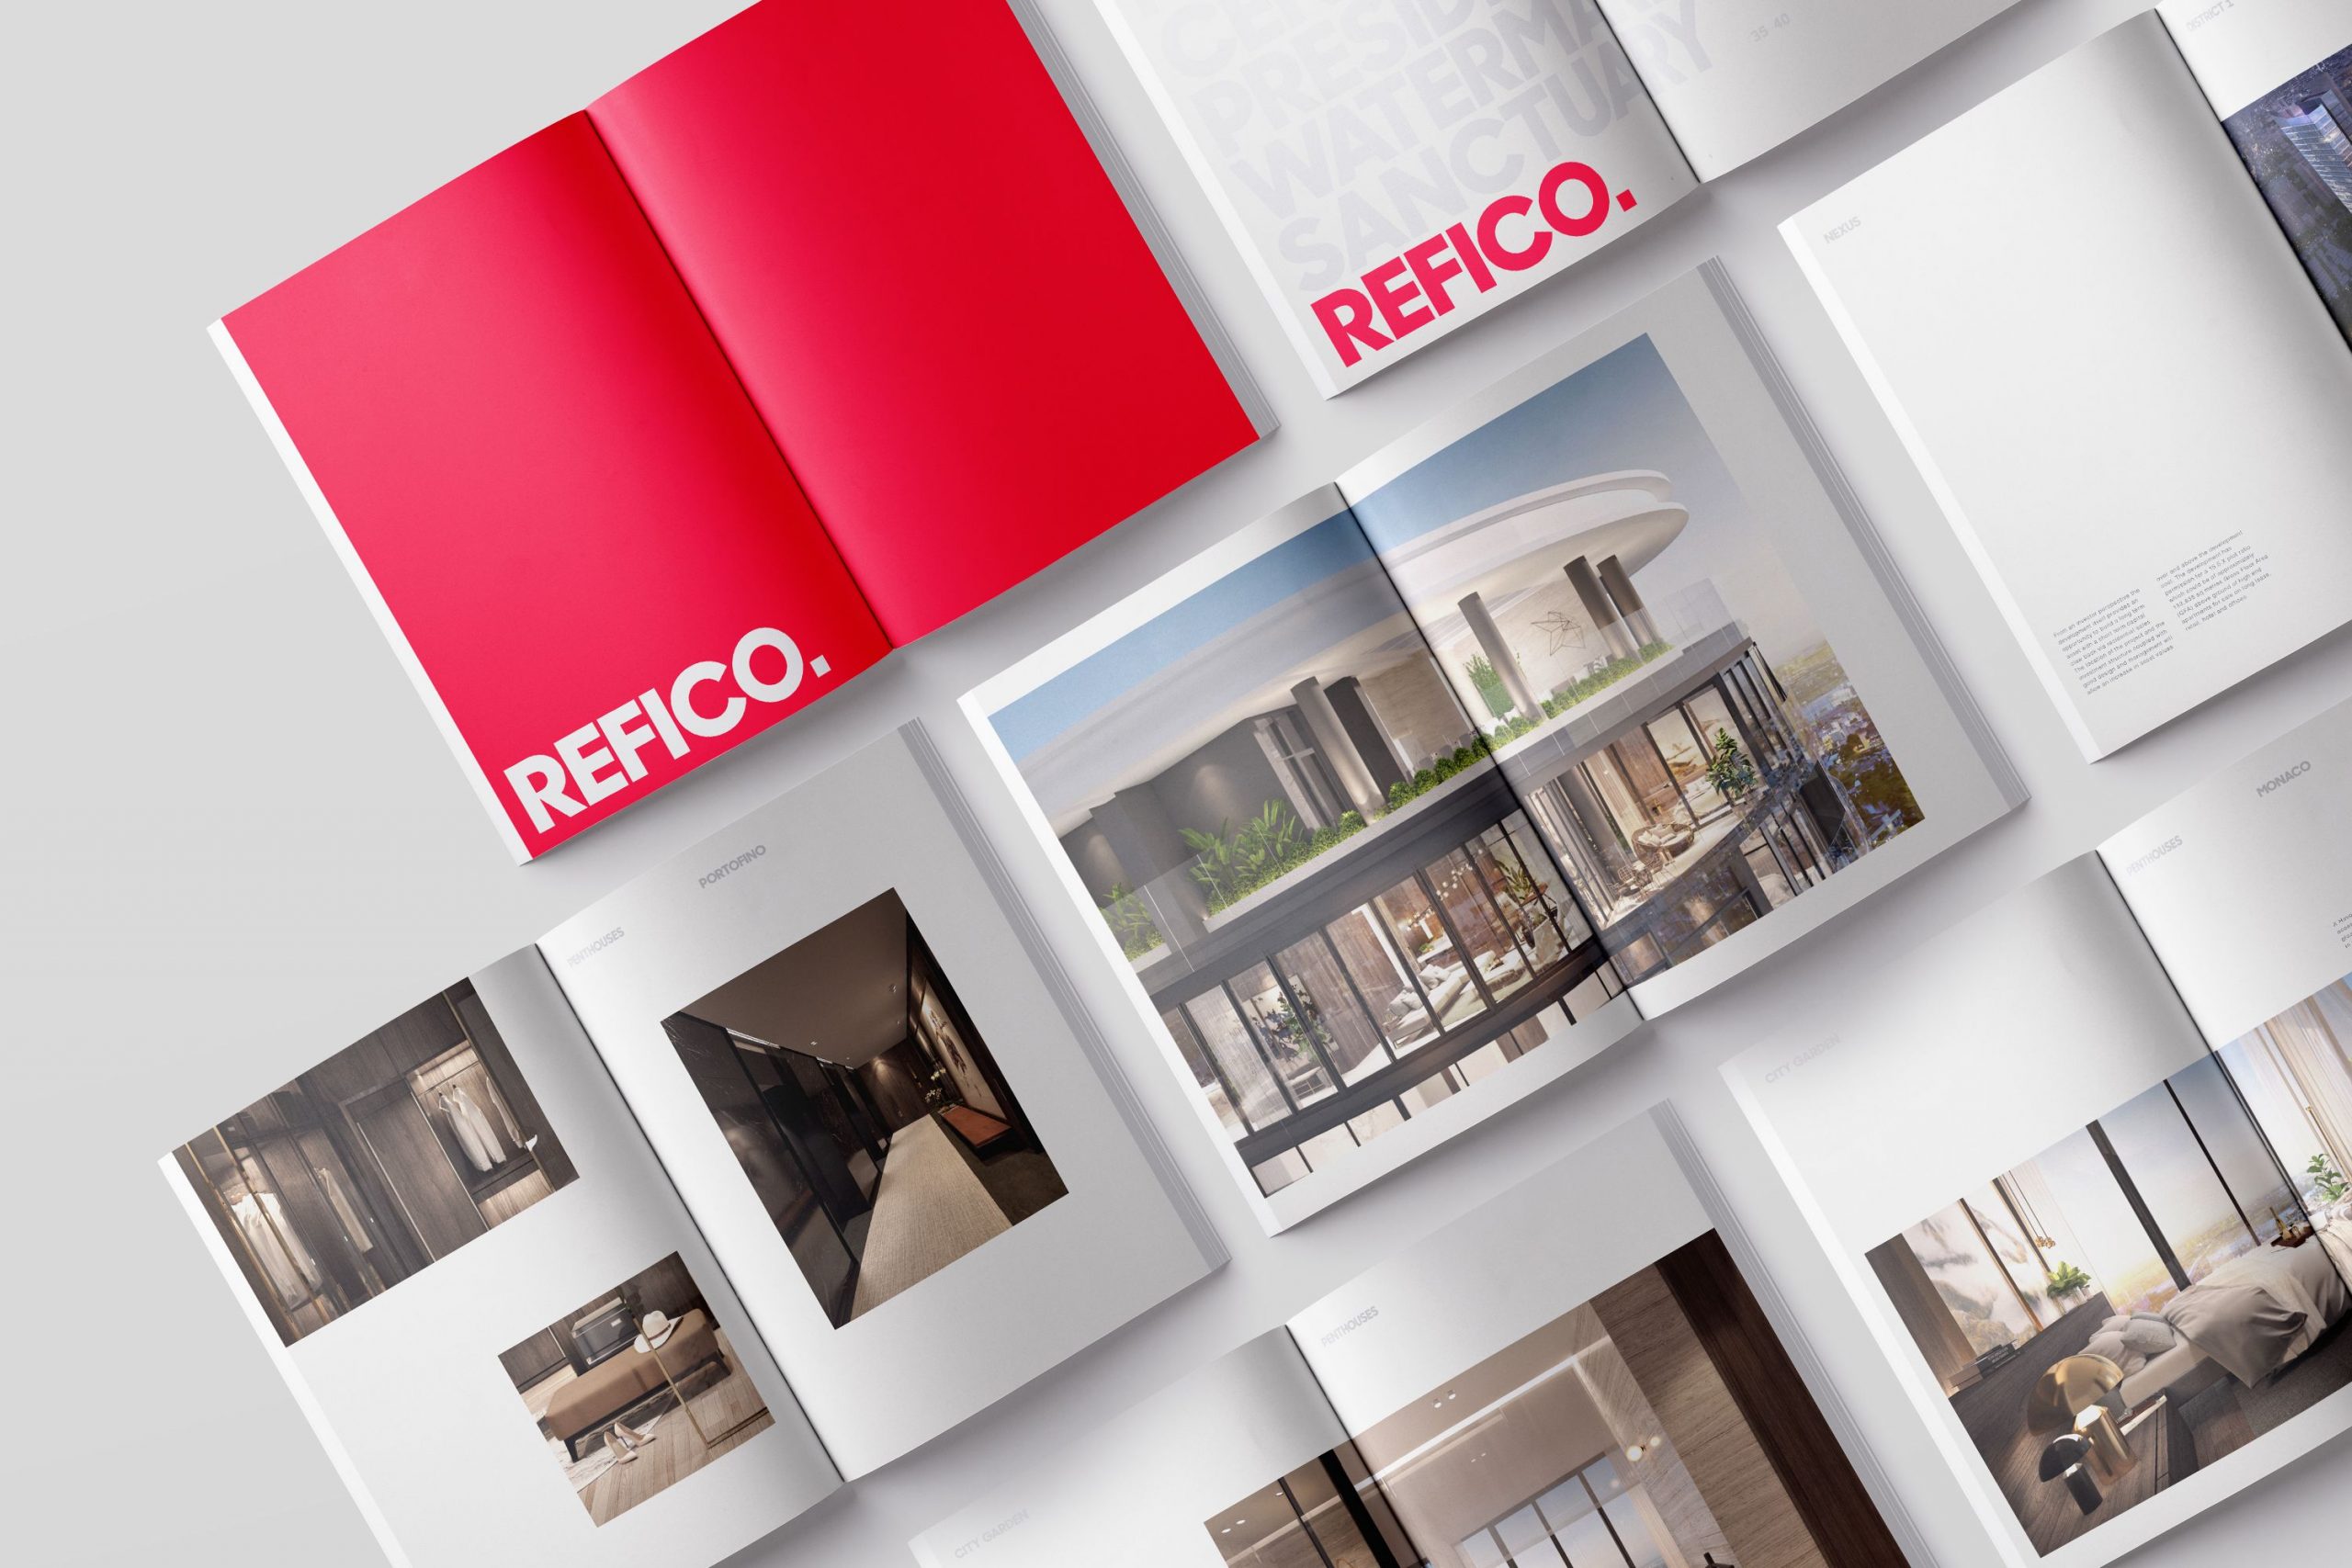 Giới thiệu Refico - Nhà phát triển bất động sản hạng sang